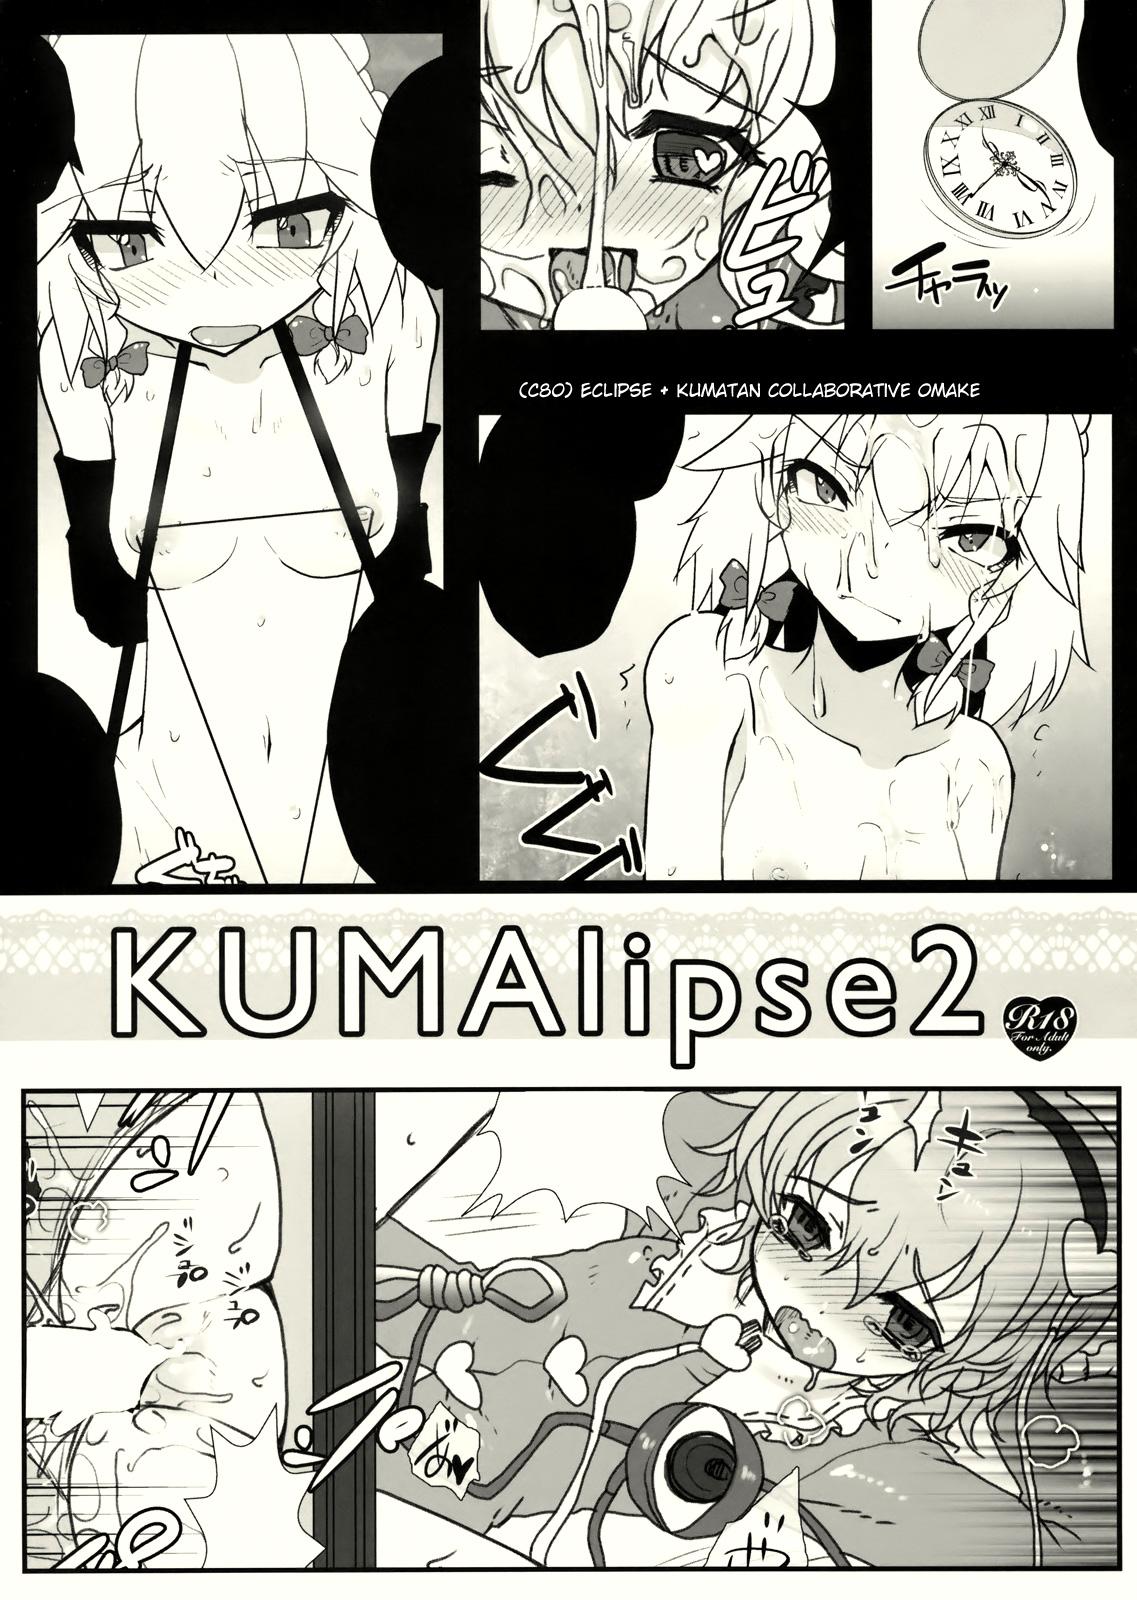 Ex Girlfriend KUMAlipse2 - Touhou project Chubby - Page 1